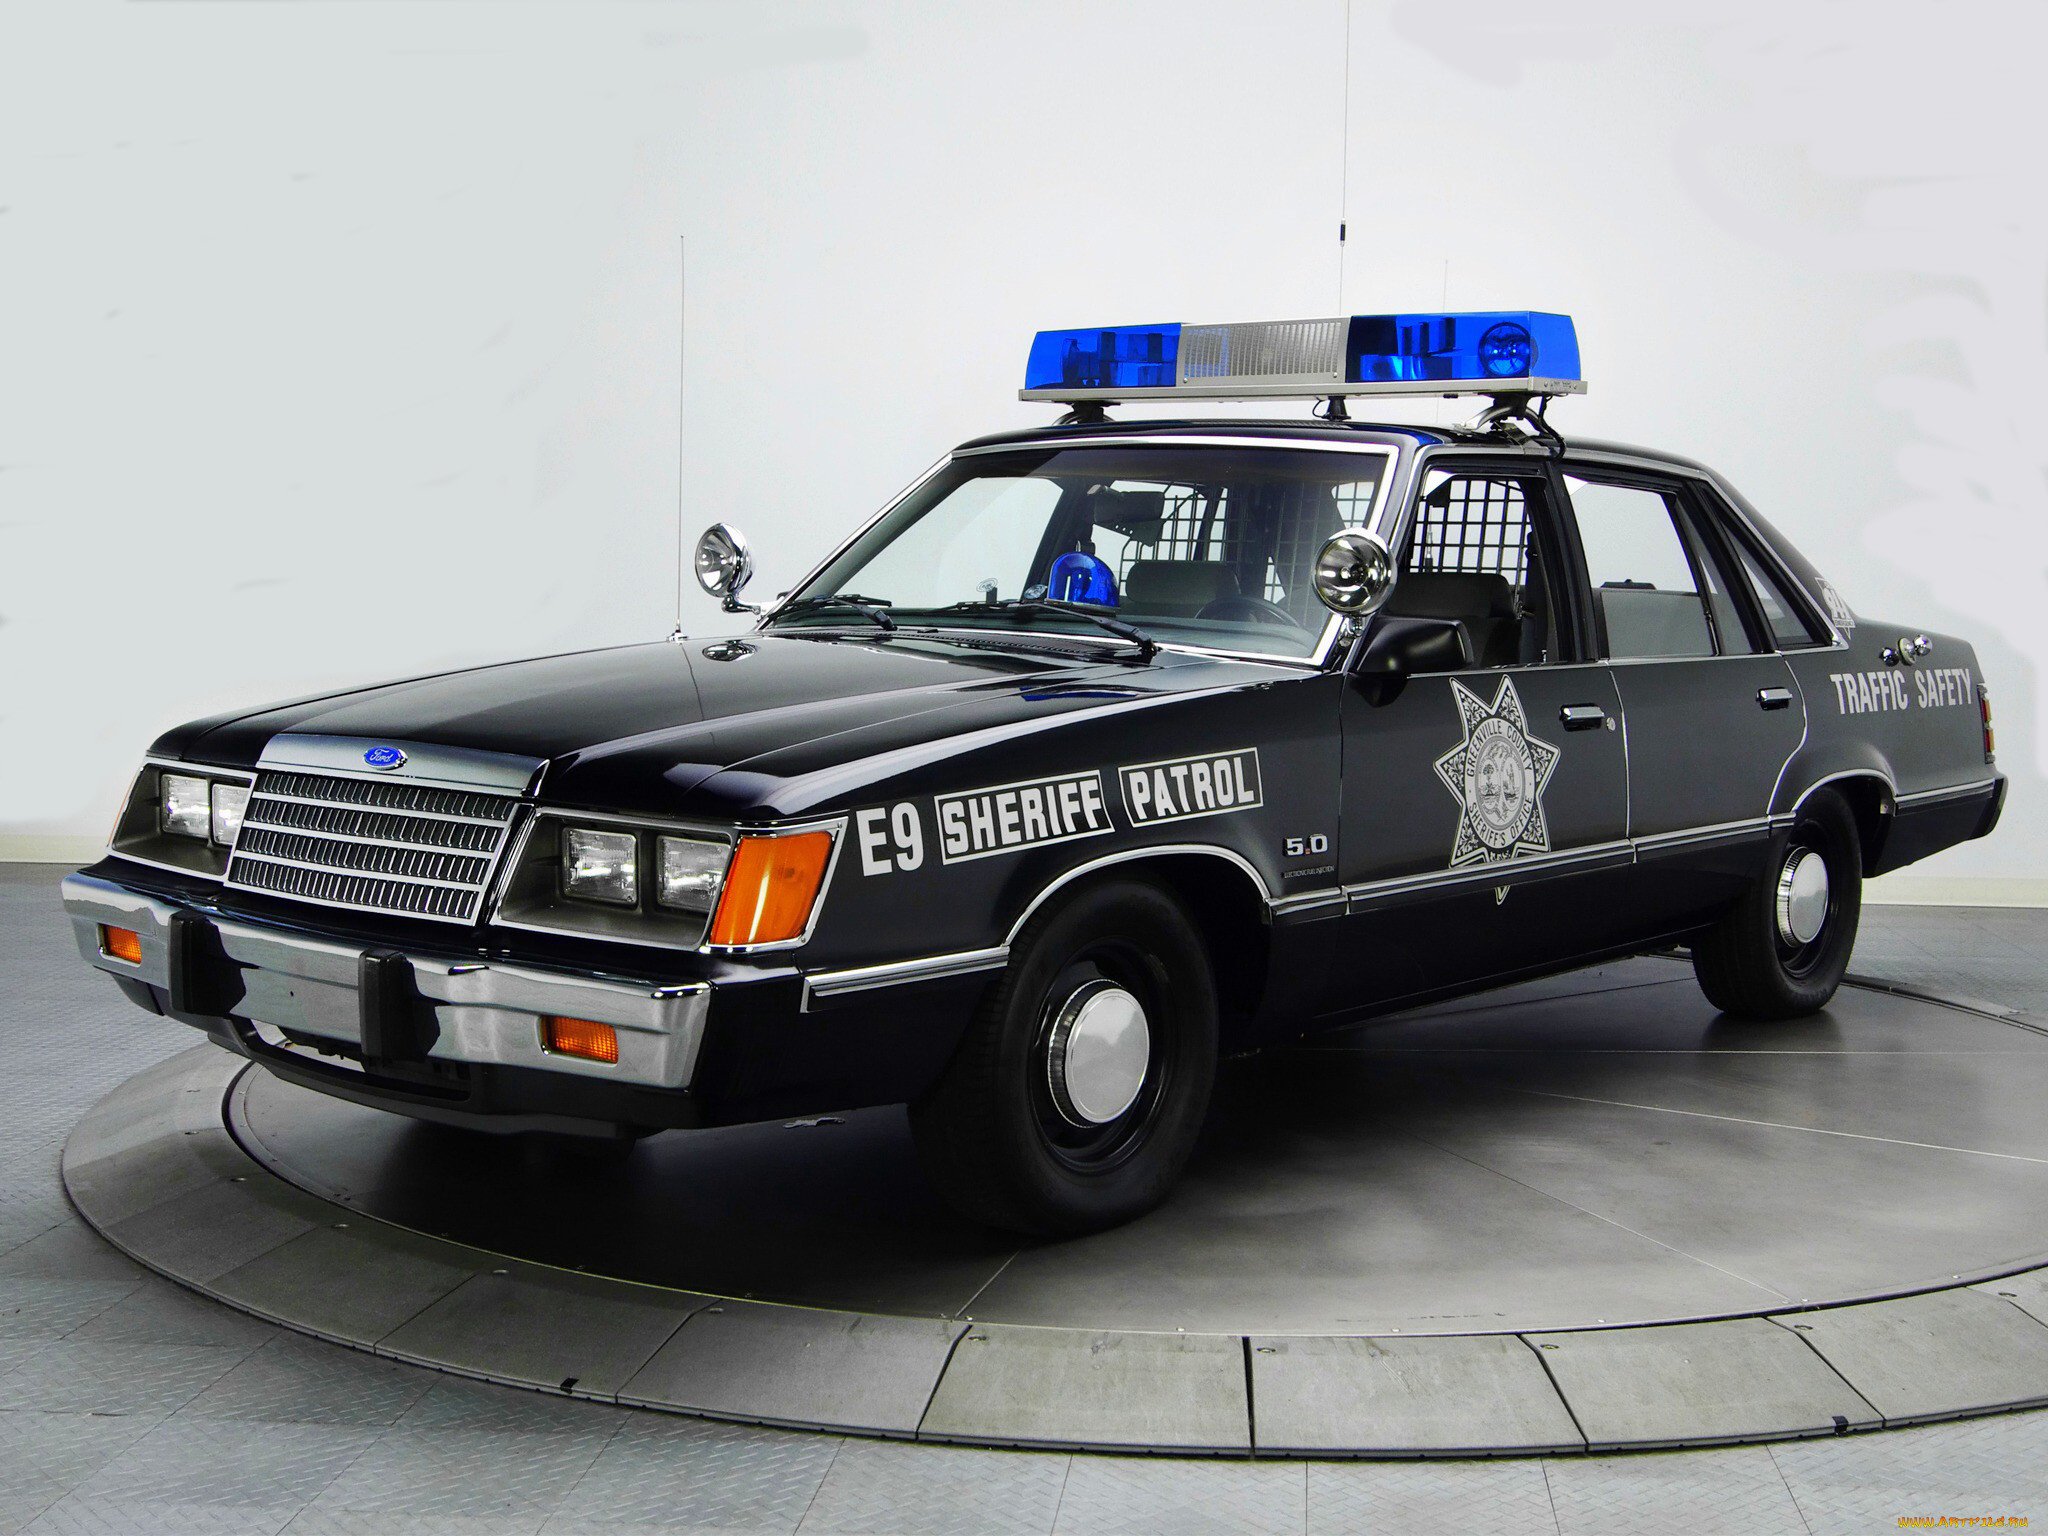 Хочу полицейскую машину. Chevrolet Caprice Police Interceptor 1980. Chevrolet Caprice Police Interceptor. Chevrolet Caprice 2015 Police. Форд Лтд 1984 полицейский.